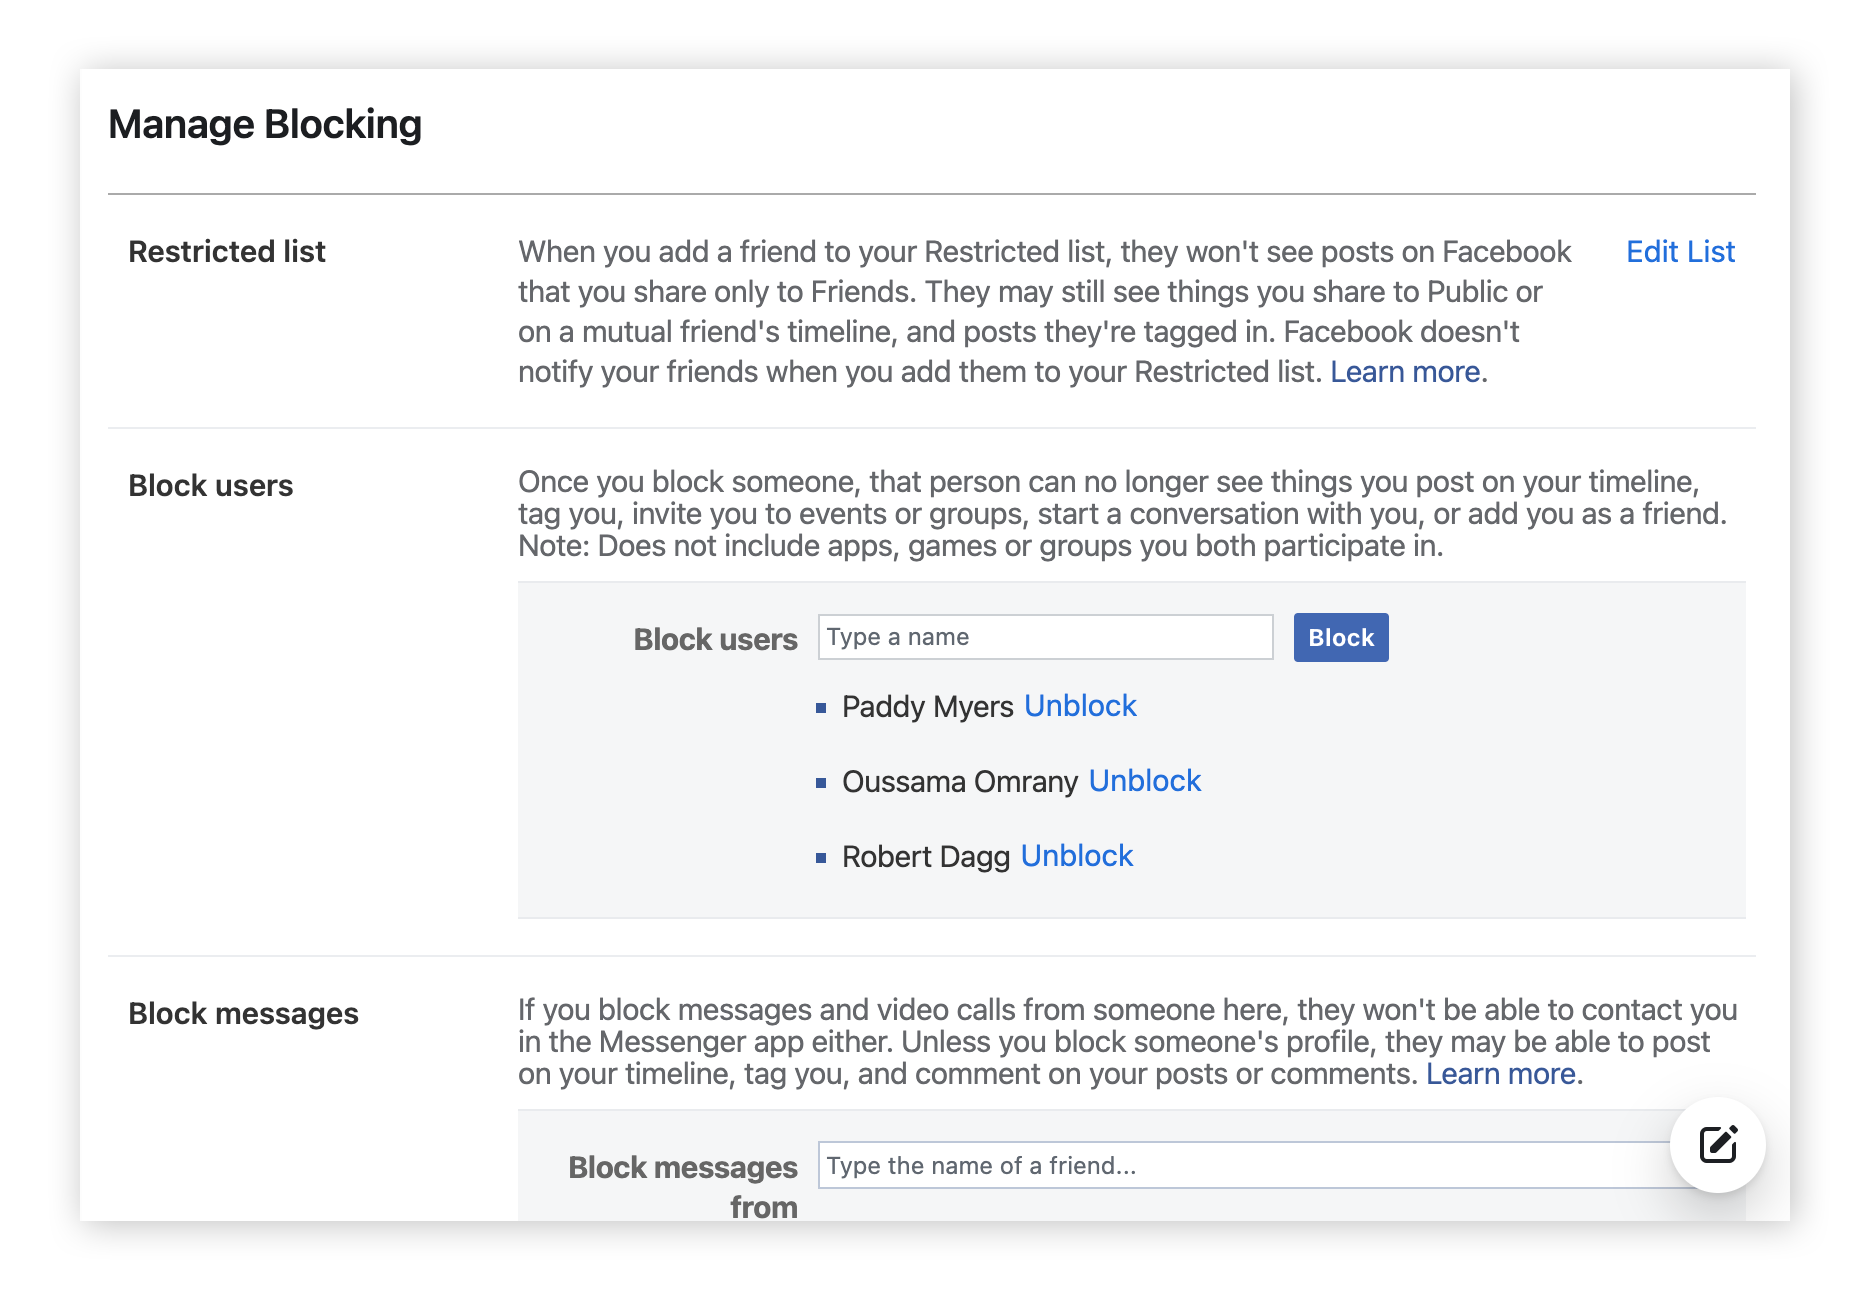 Choisissez le type de blocage que vous voulez appliquer sur Facebook : un utilisateur, un message ou un événement.